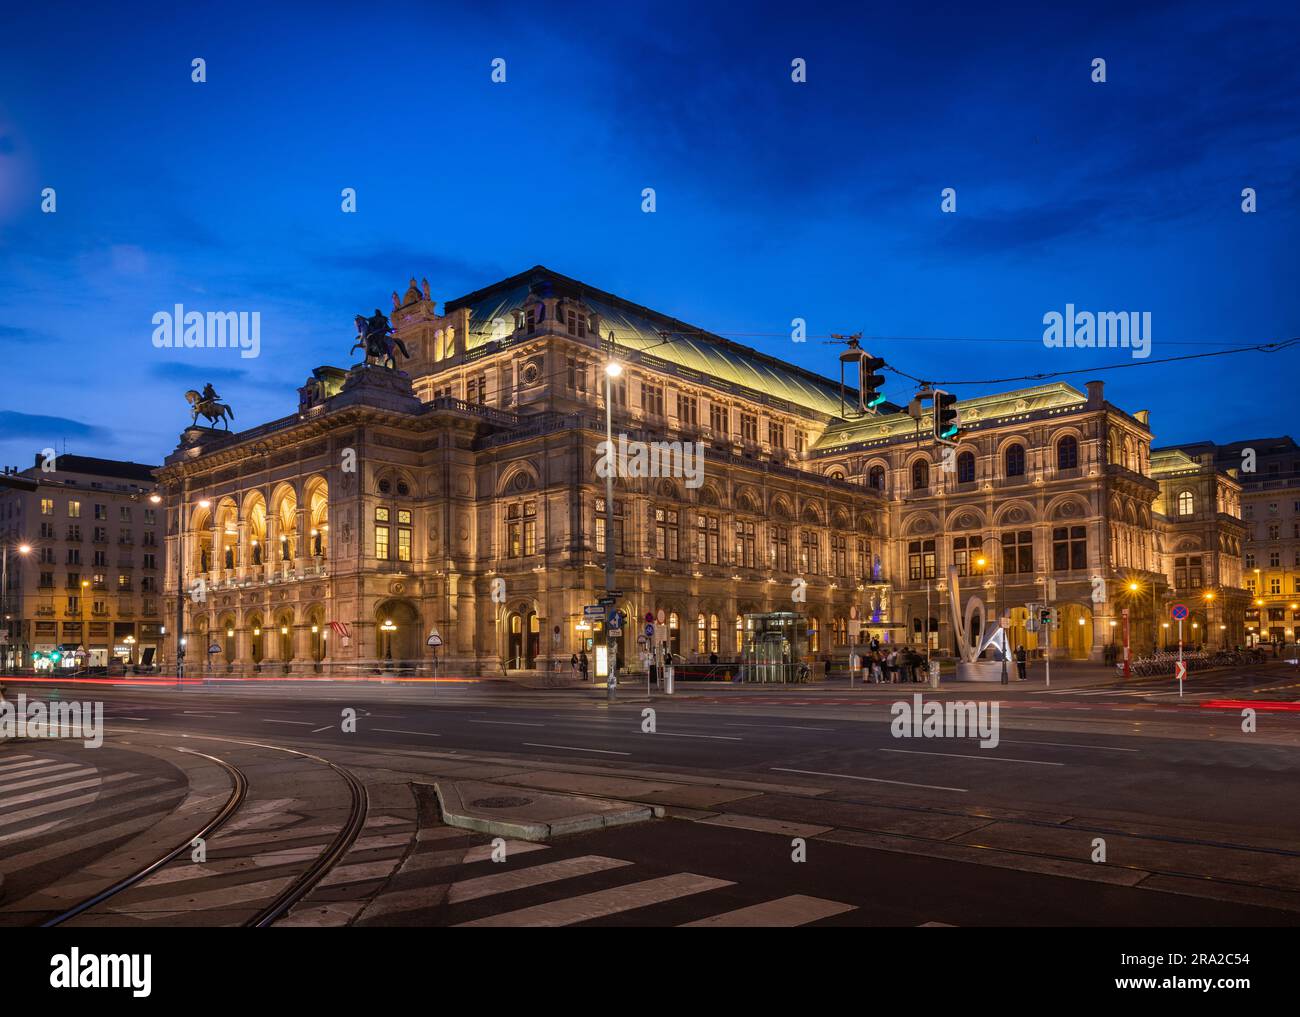 Teatro dell'Opera di Vienna illuminato durante l'ora blu/crepuscolo. Persone non identificabili a causa della sfocatura del movimento. Strisce leggere causate dal passaggio di tram e auto Foto Stock